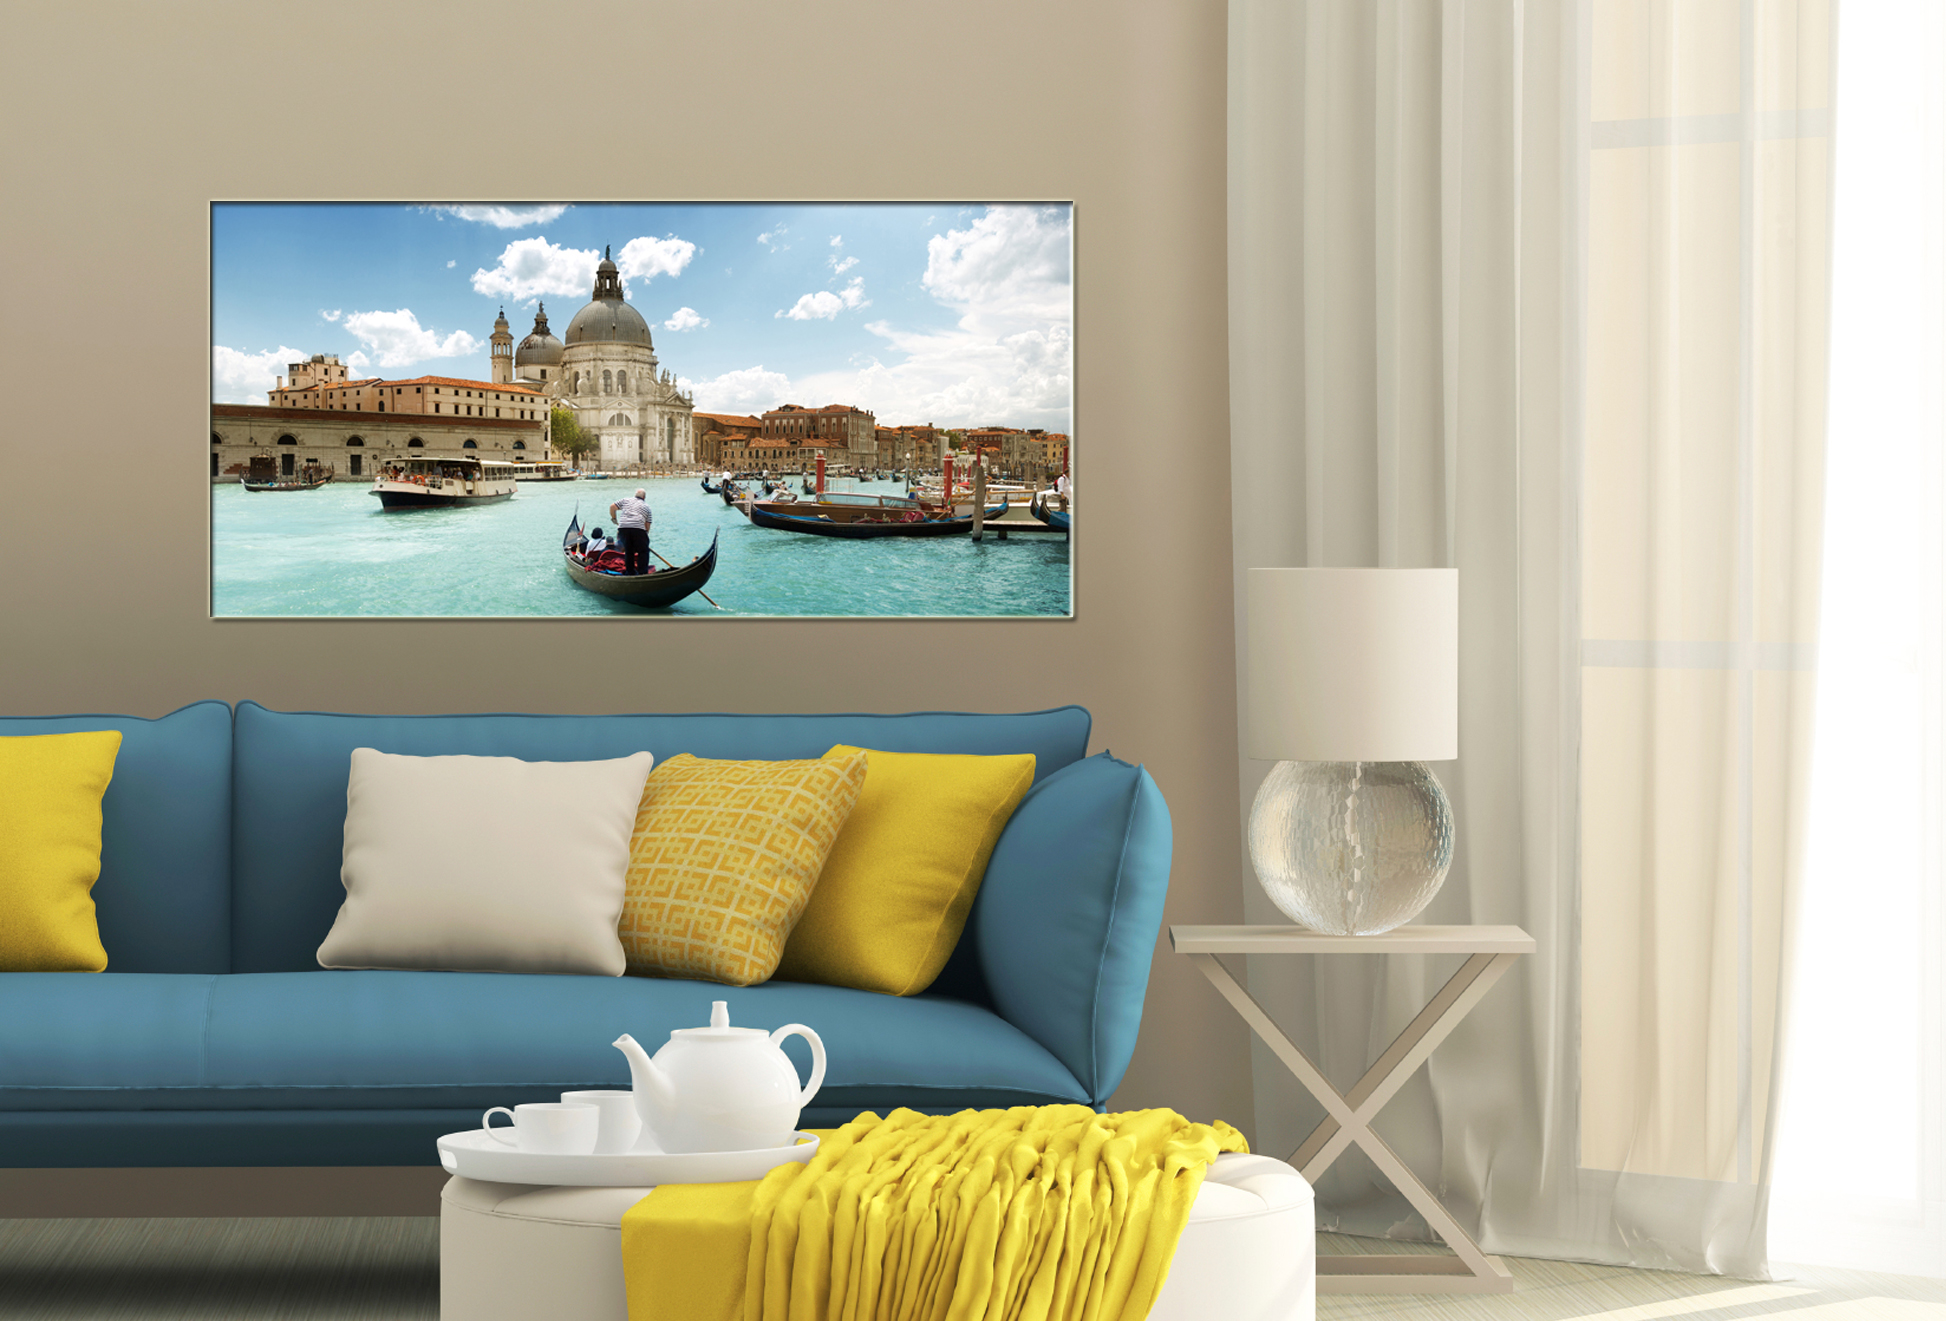 quadro venezia in vetro immagini stampati serglasstyle